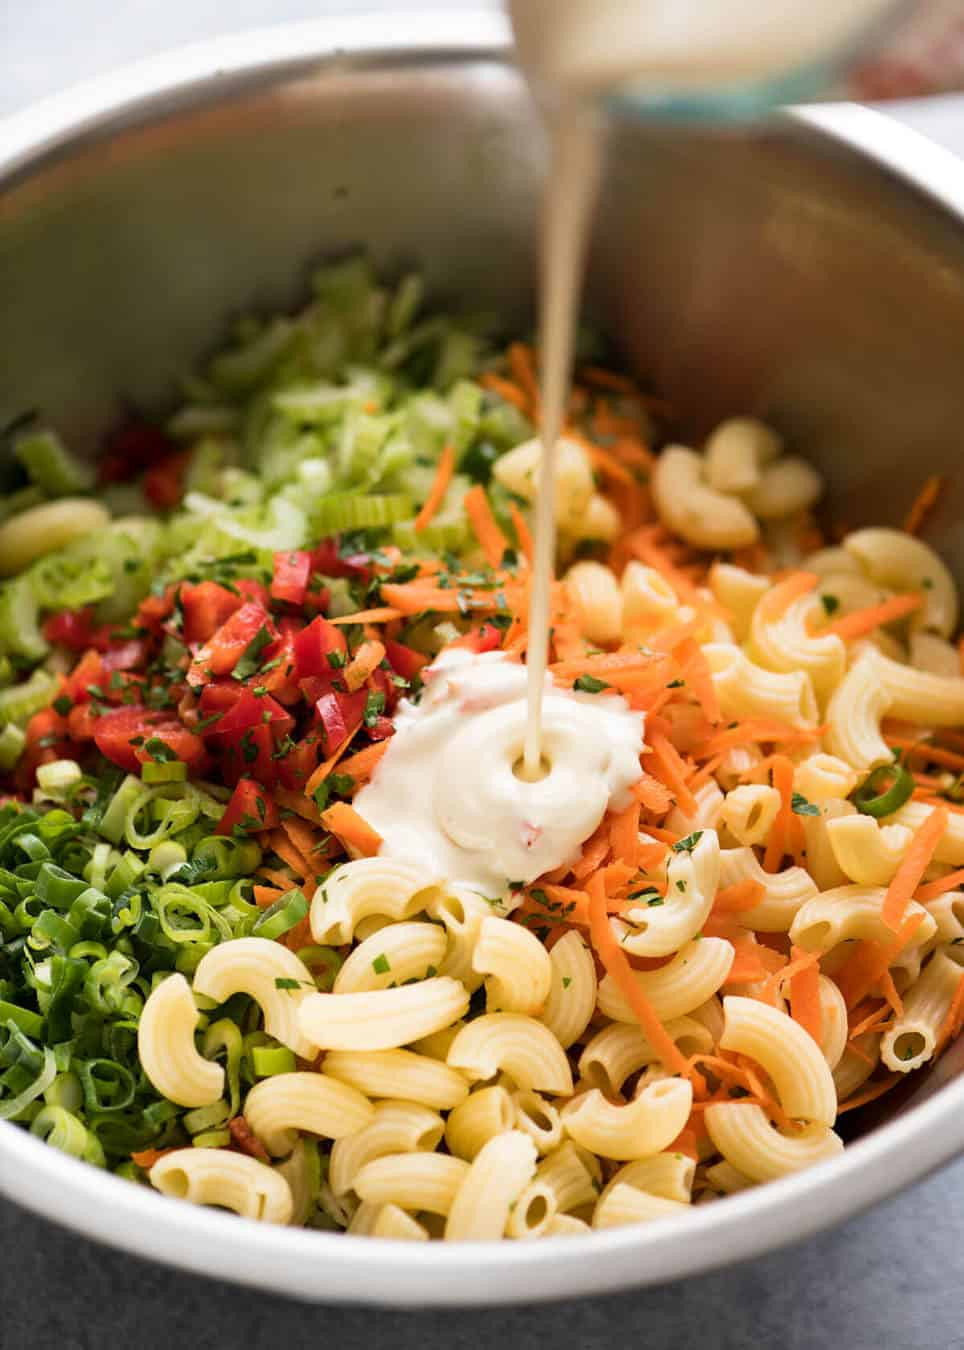 How To Make Macaroni Salad
 Macaroni Salad